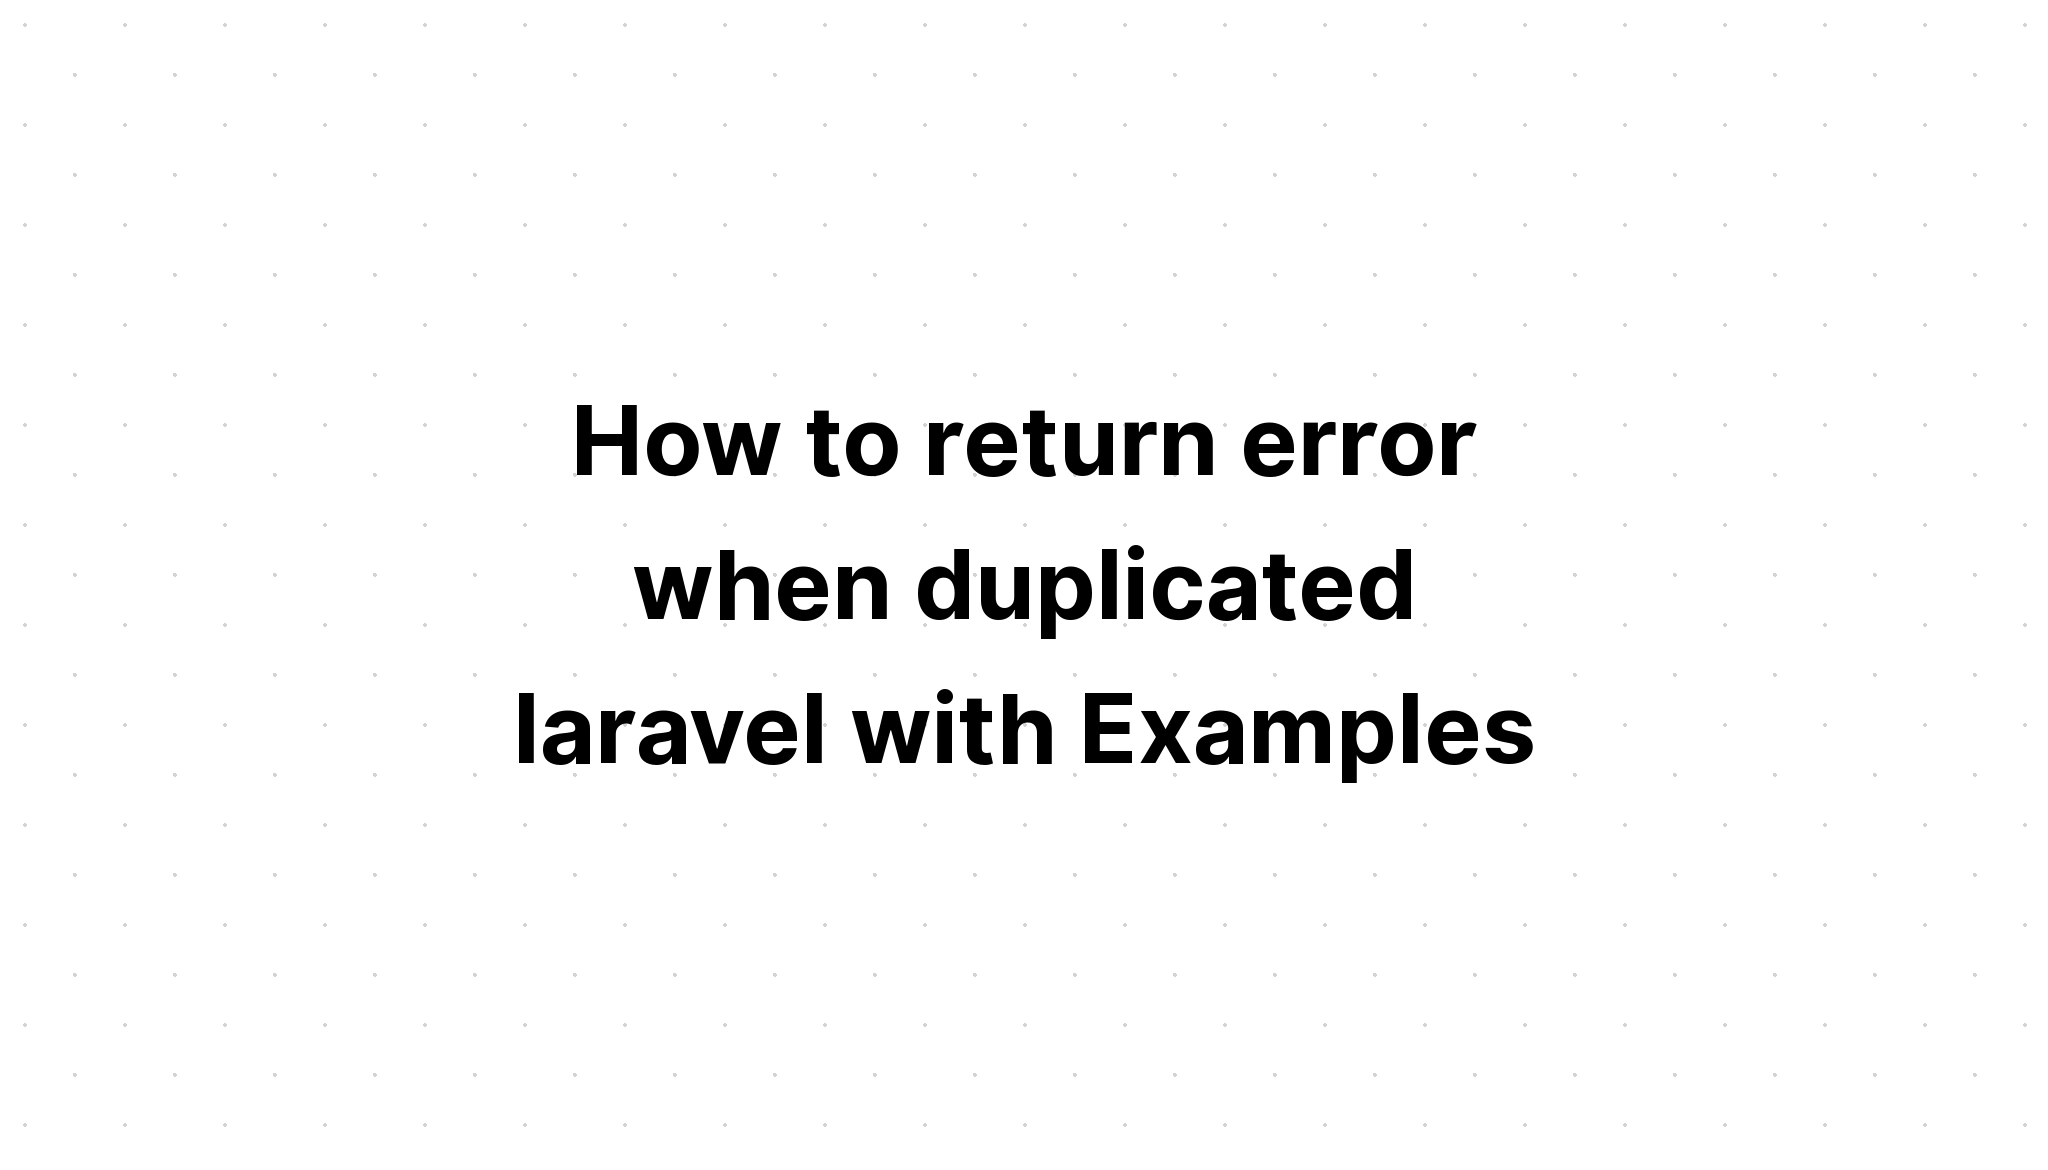 Cách trả về lỗi khi trùng lặp laravel với Ví dụ